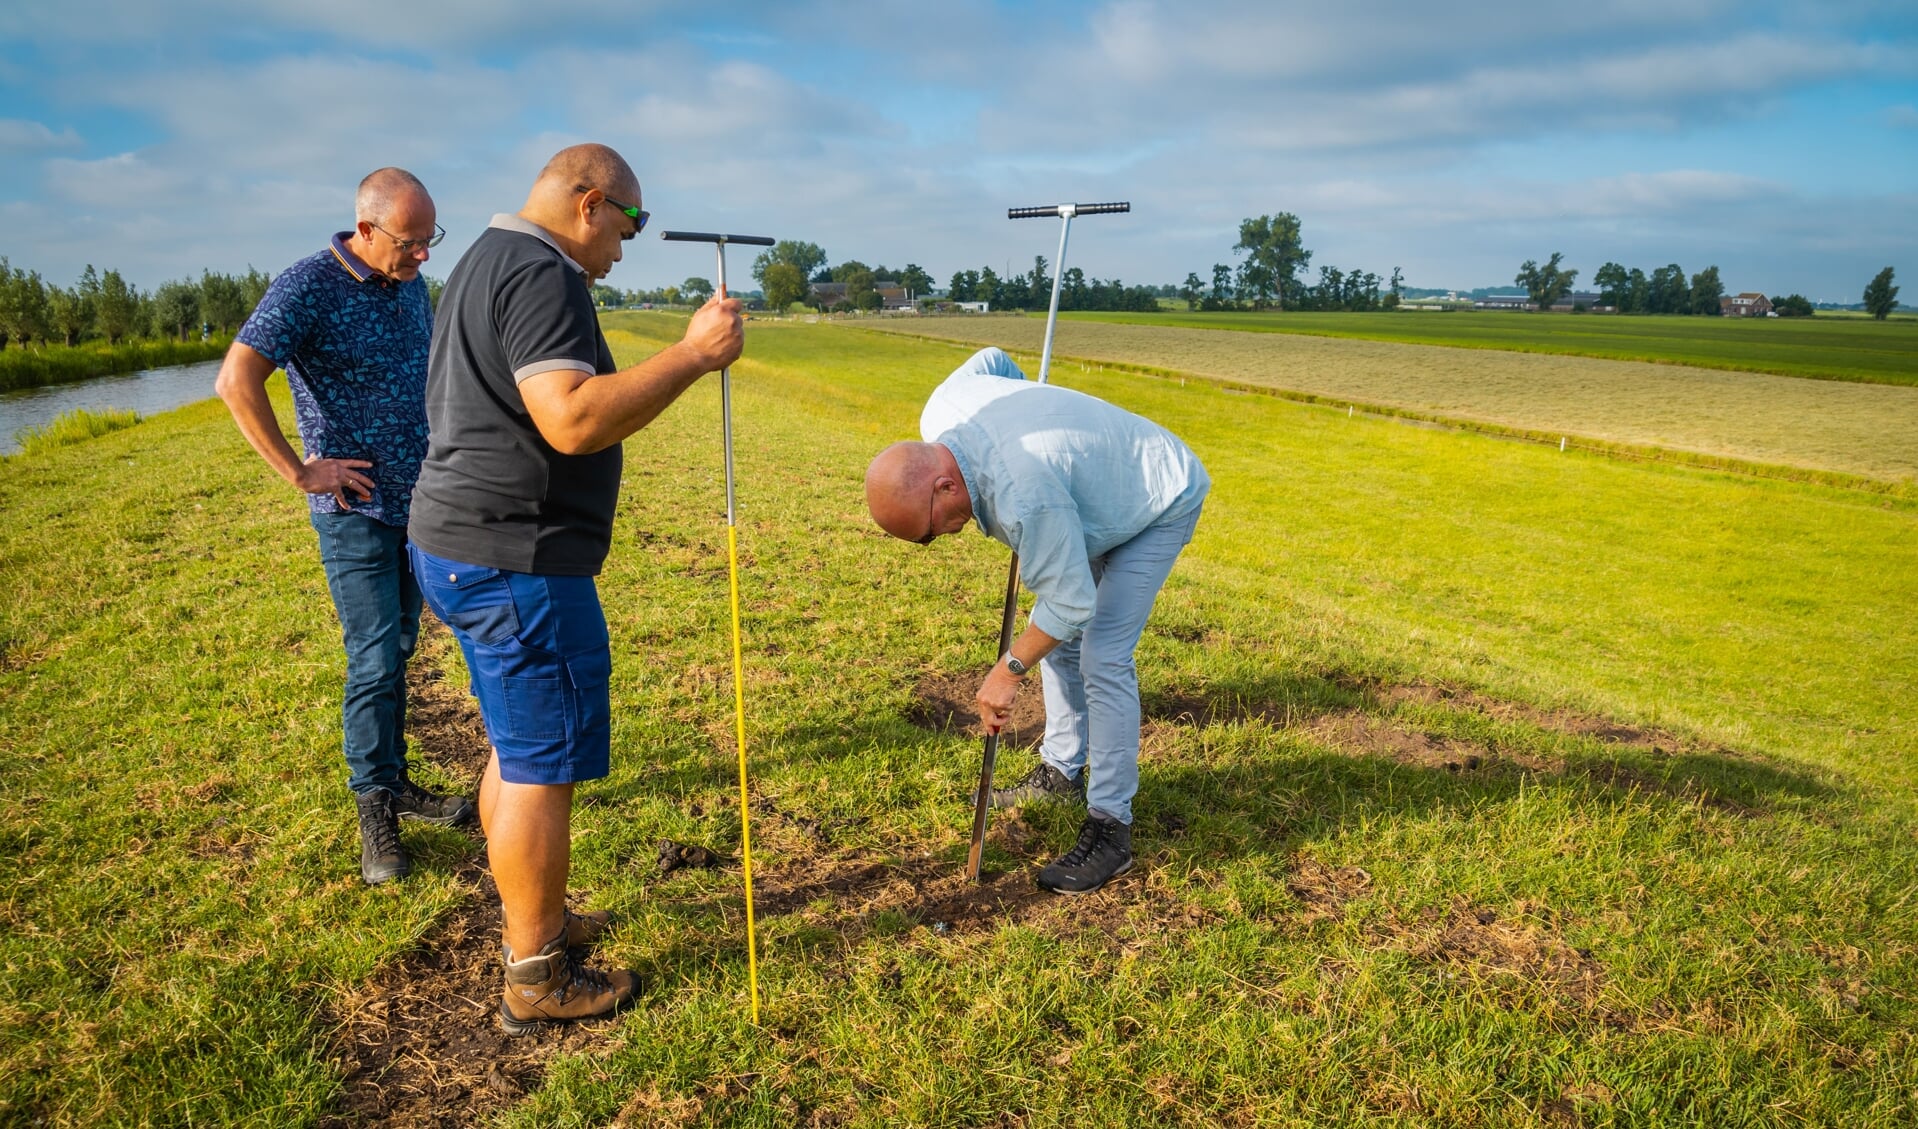 Medewerkers van Rijnland inspecteren de dijken regelmatig met deze droogte.